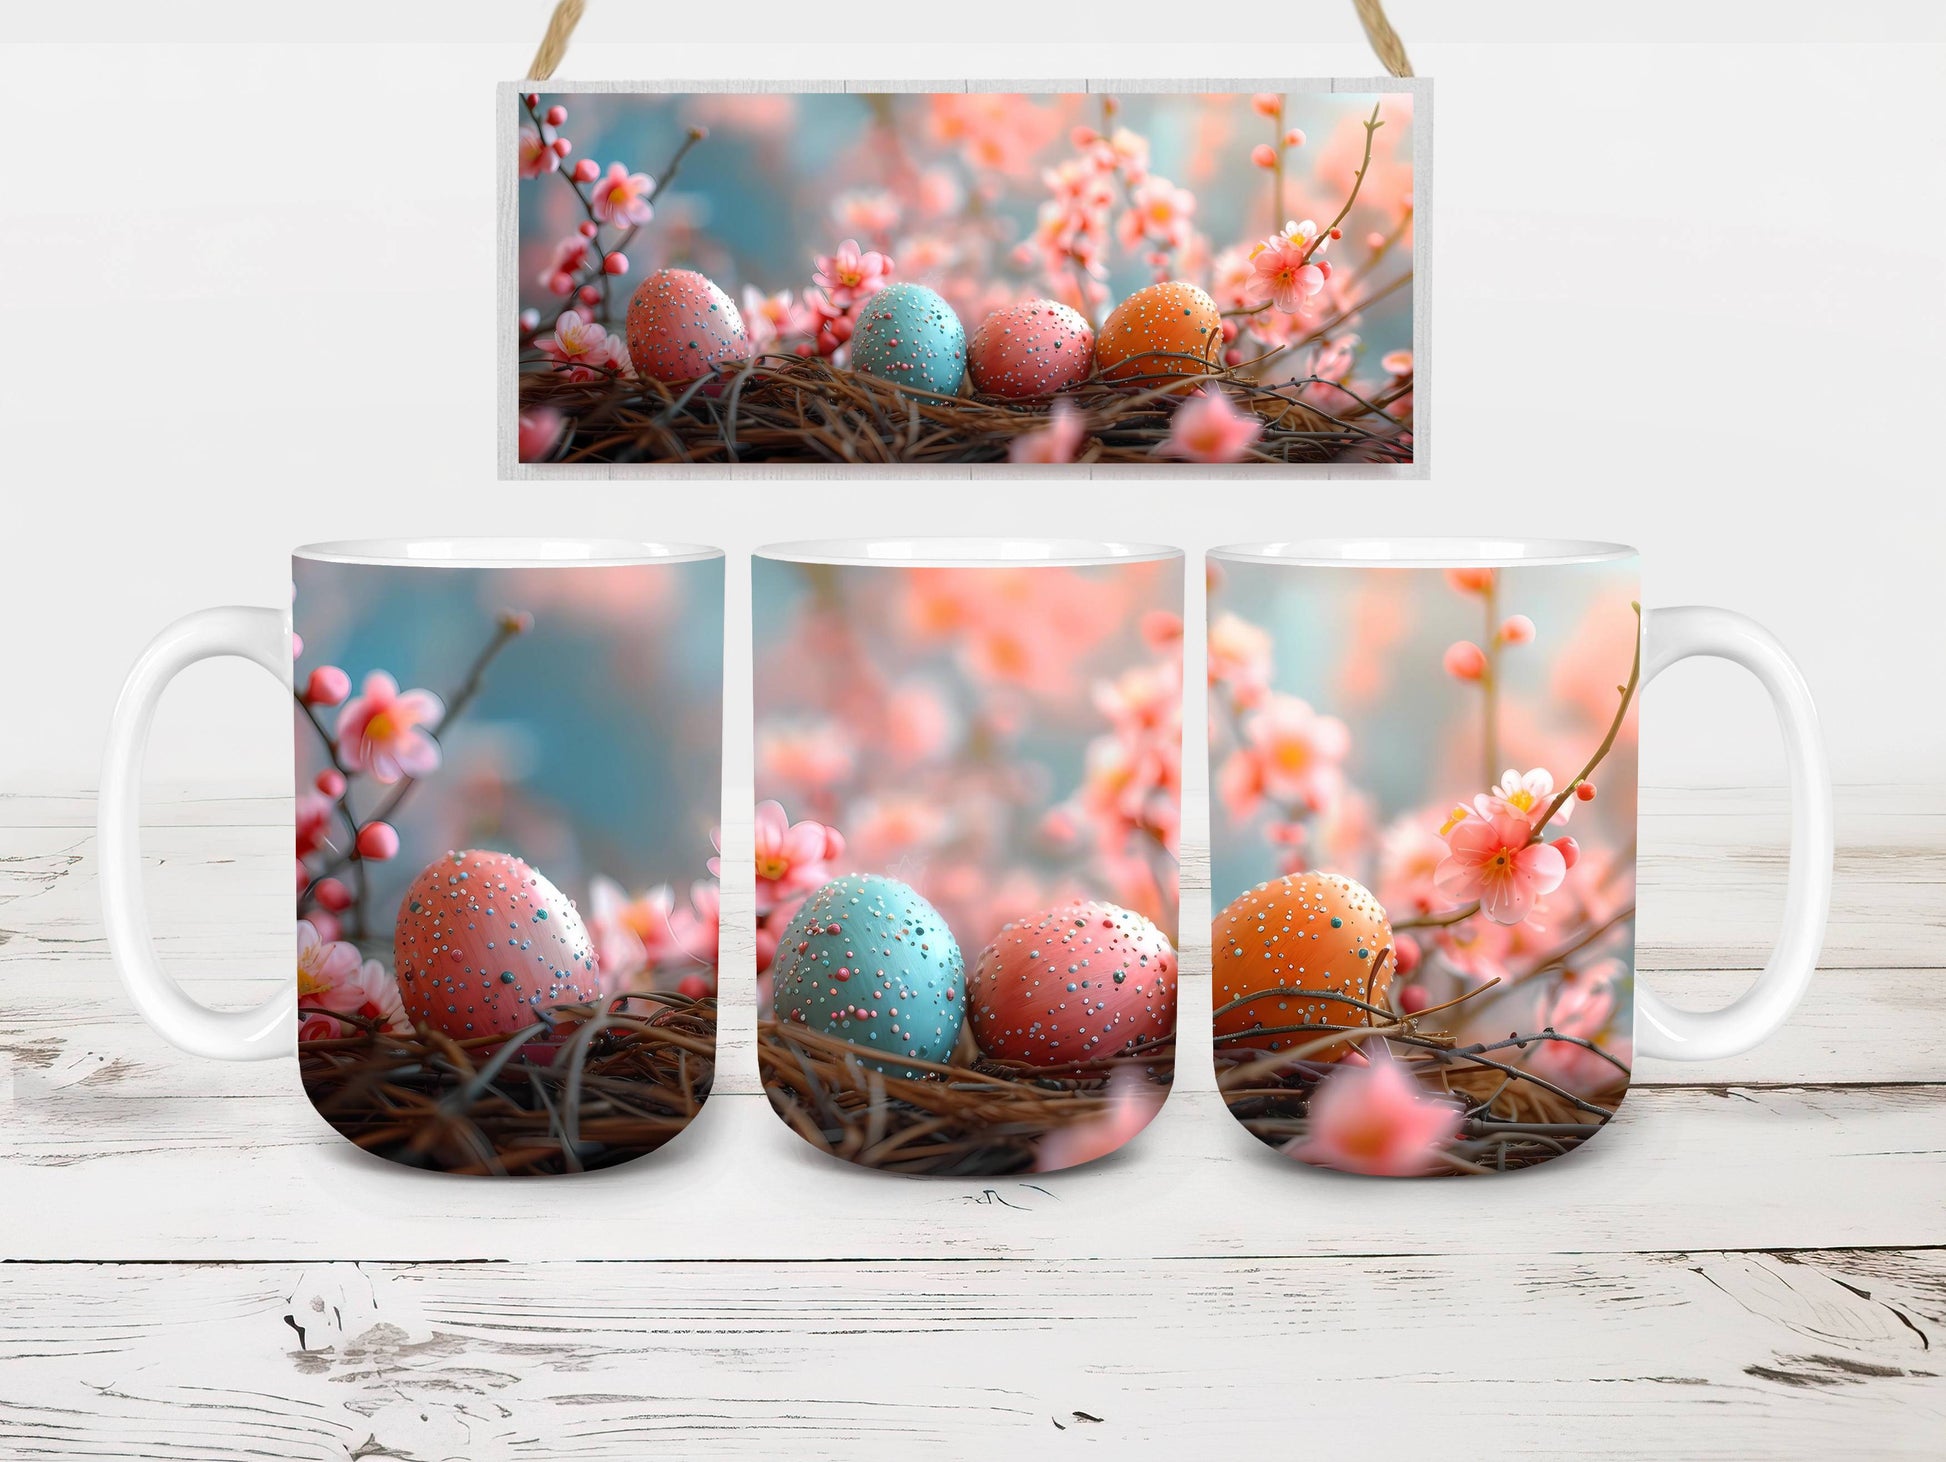 Vintage Easter 6 Mug Wrap - CraftNest